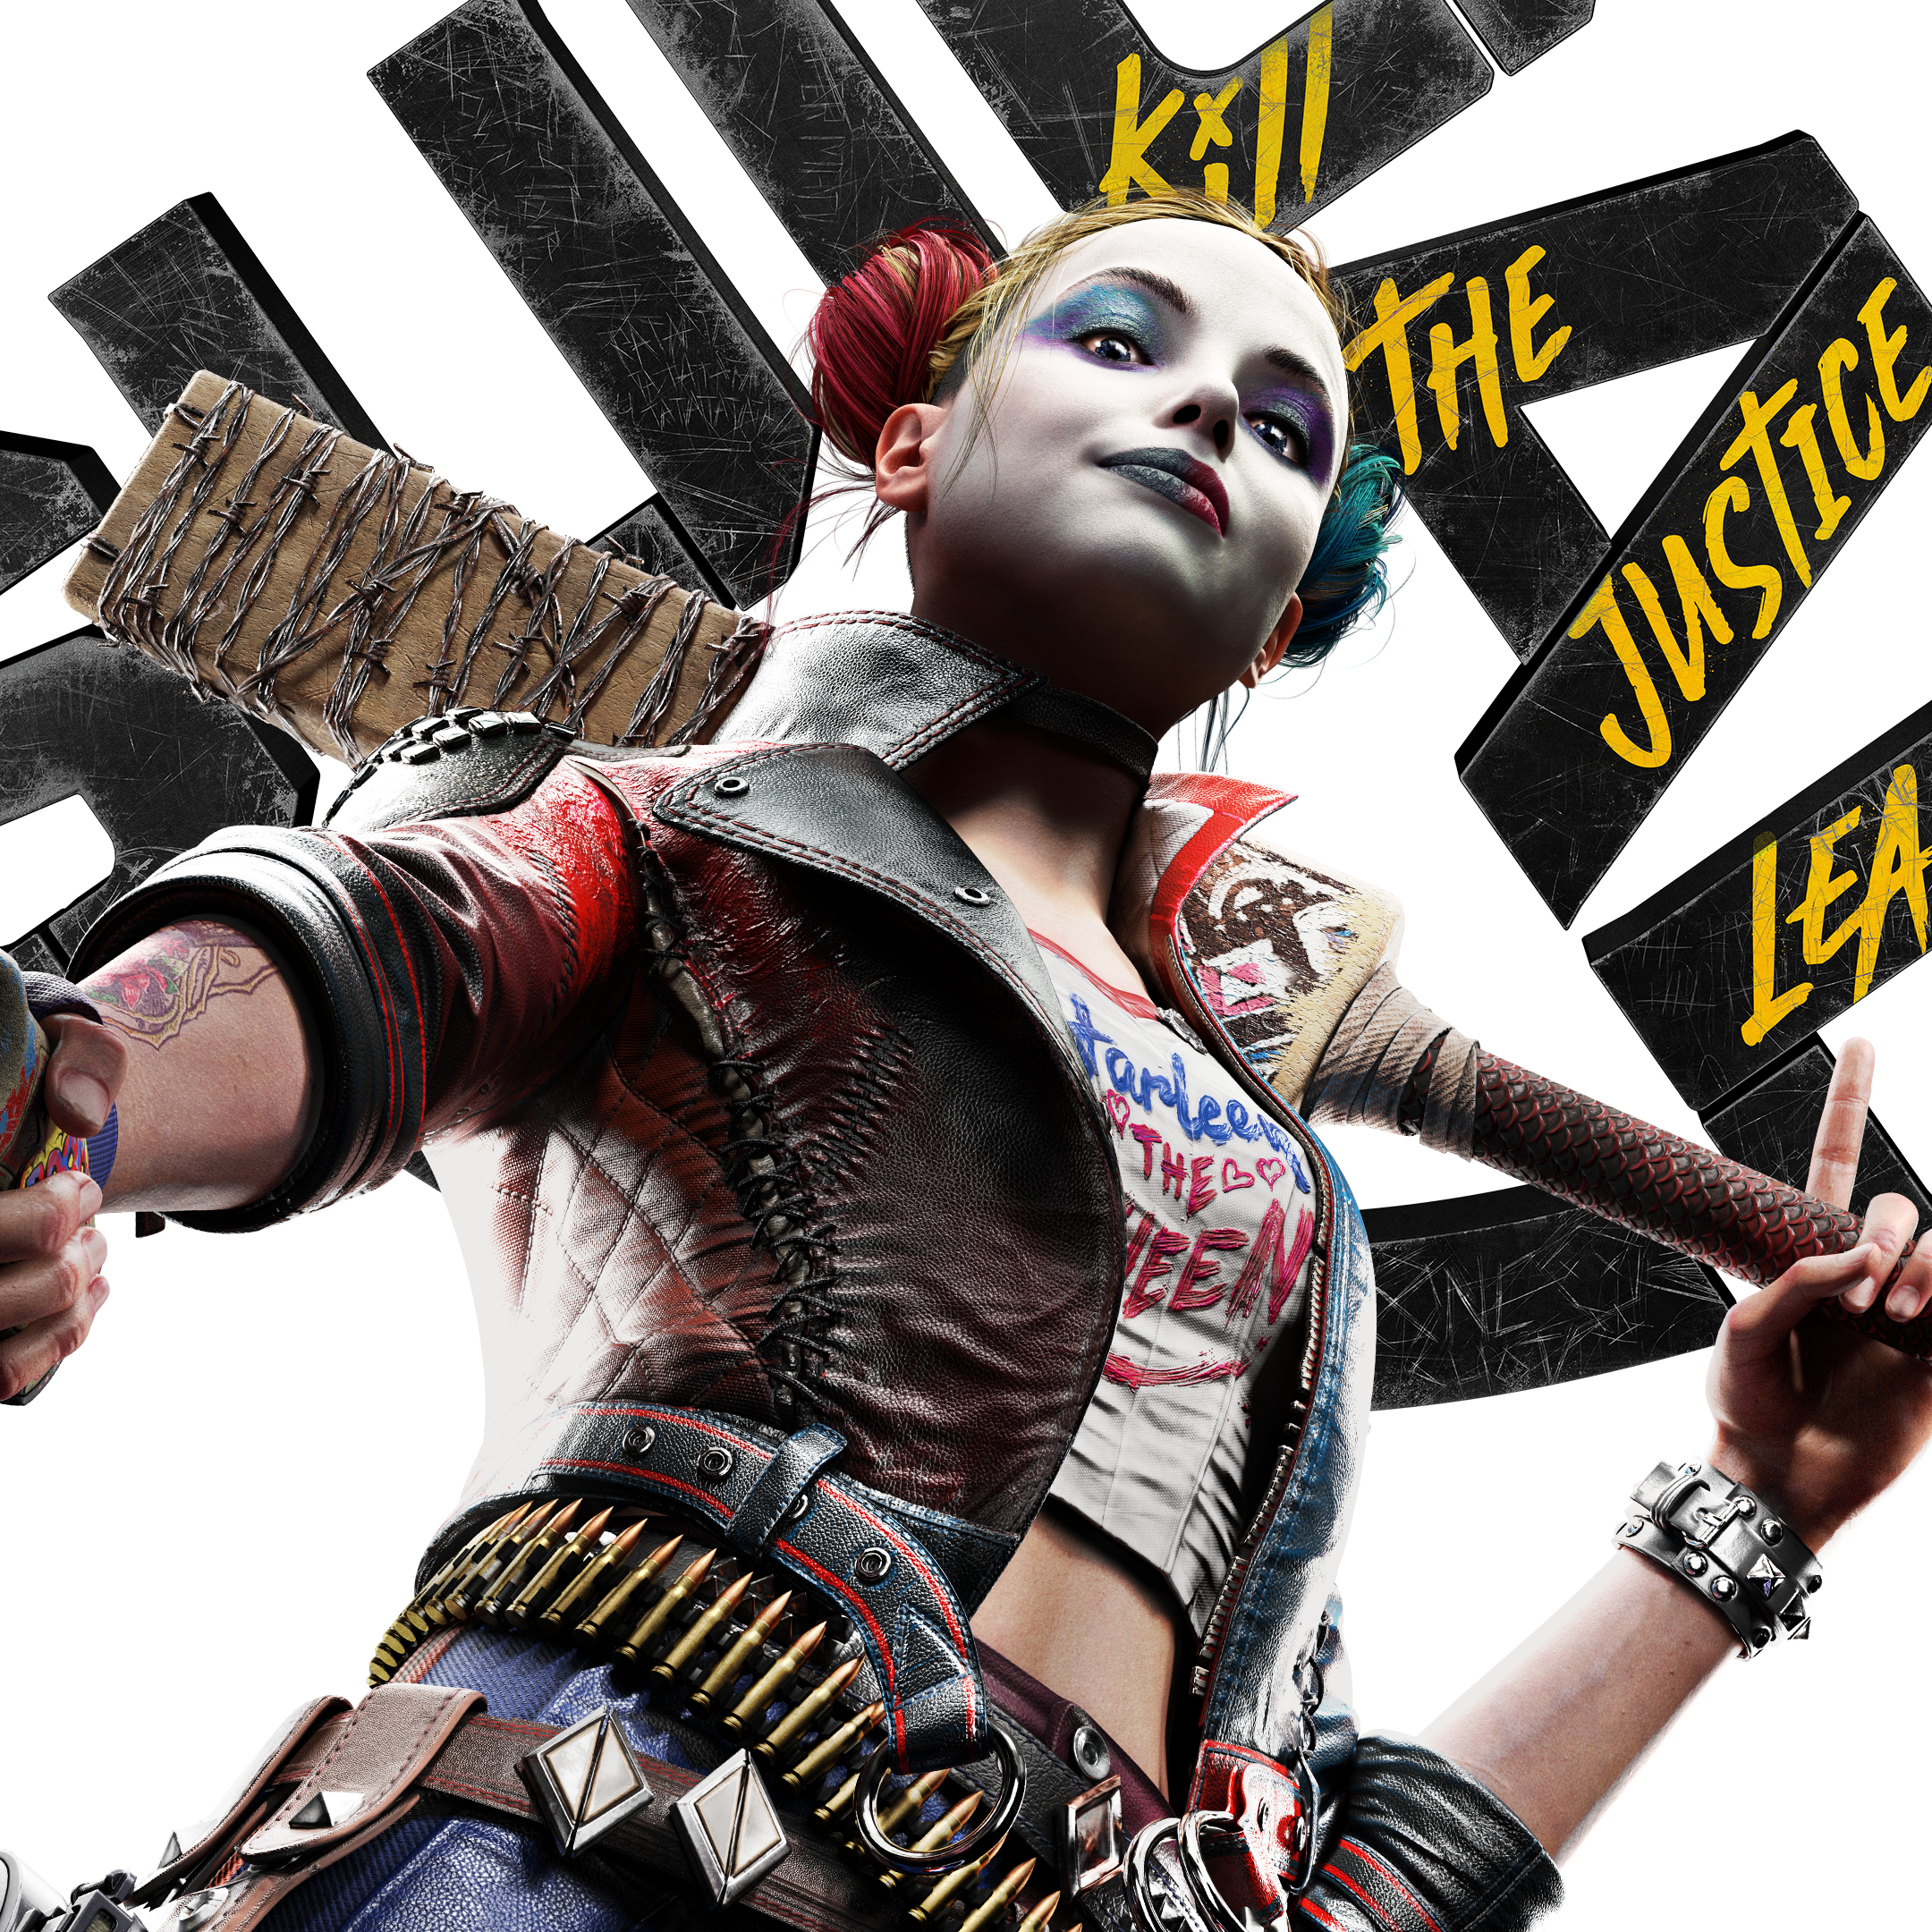 Esquadrão Suicida: Kill the Justice League será jogável offline